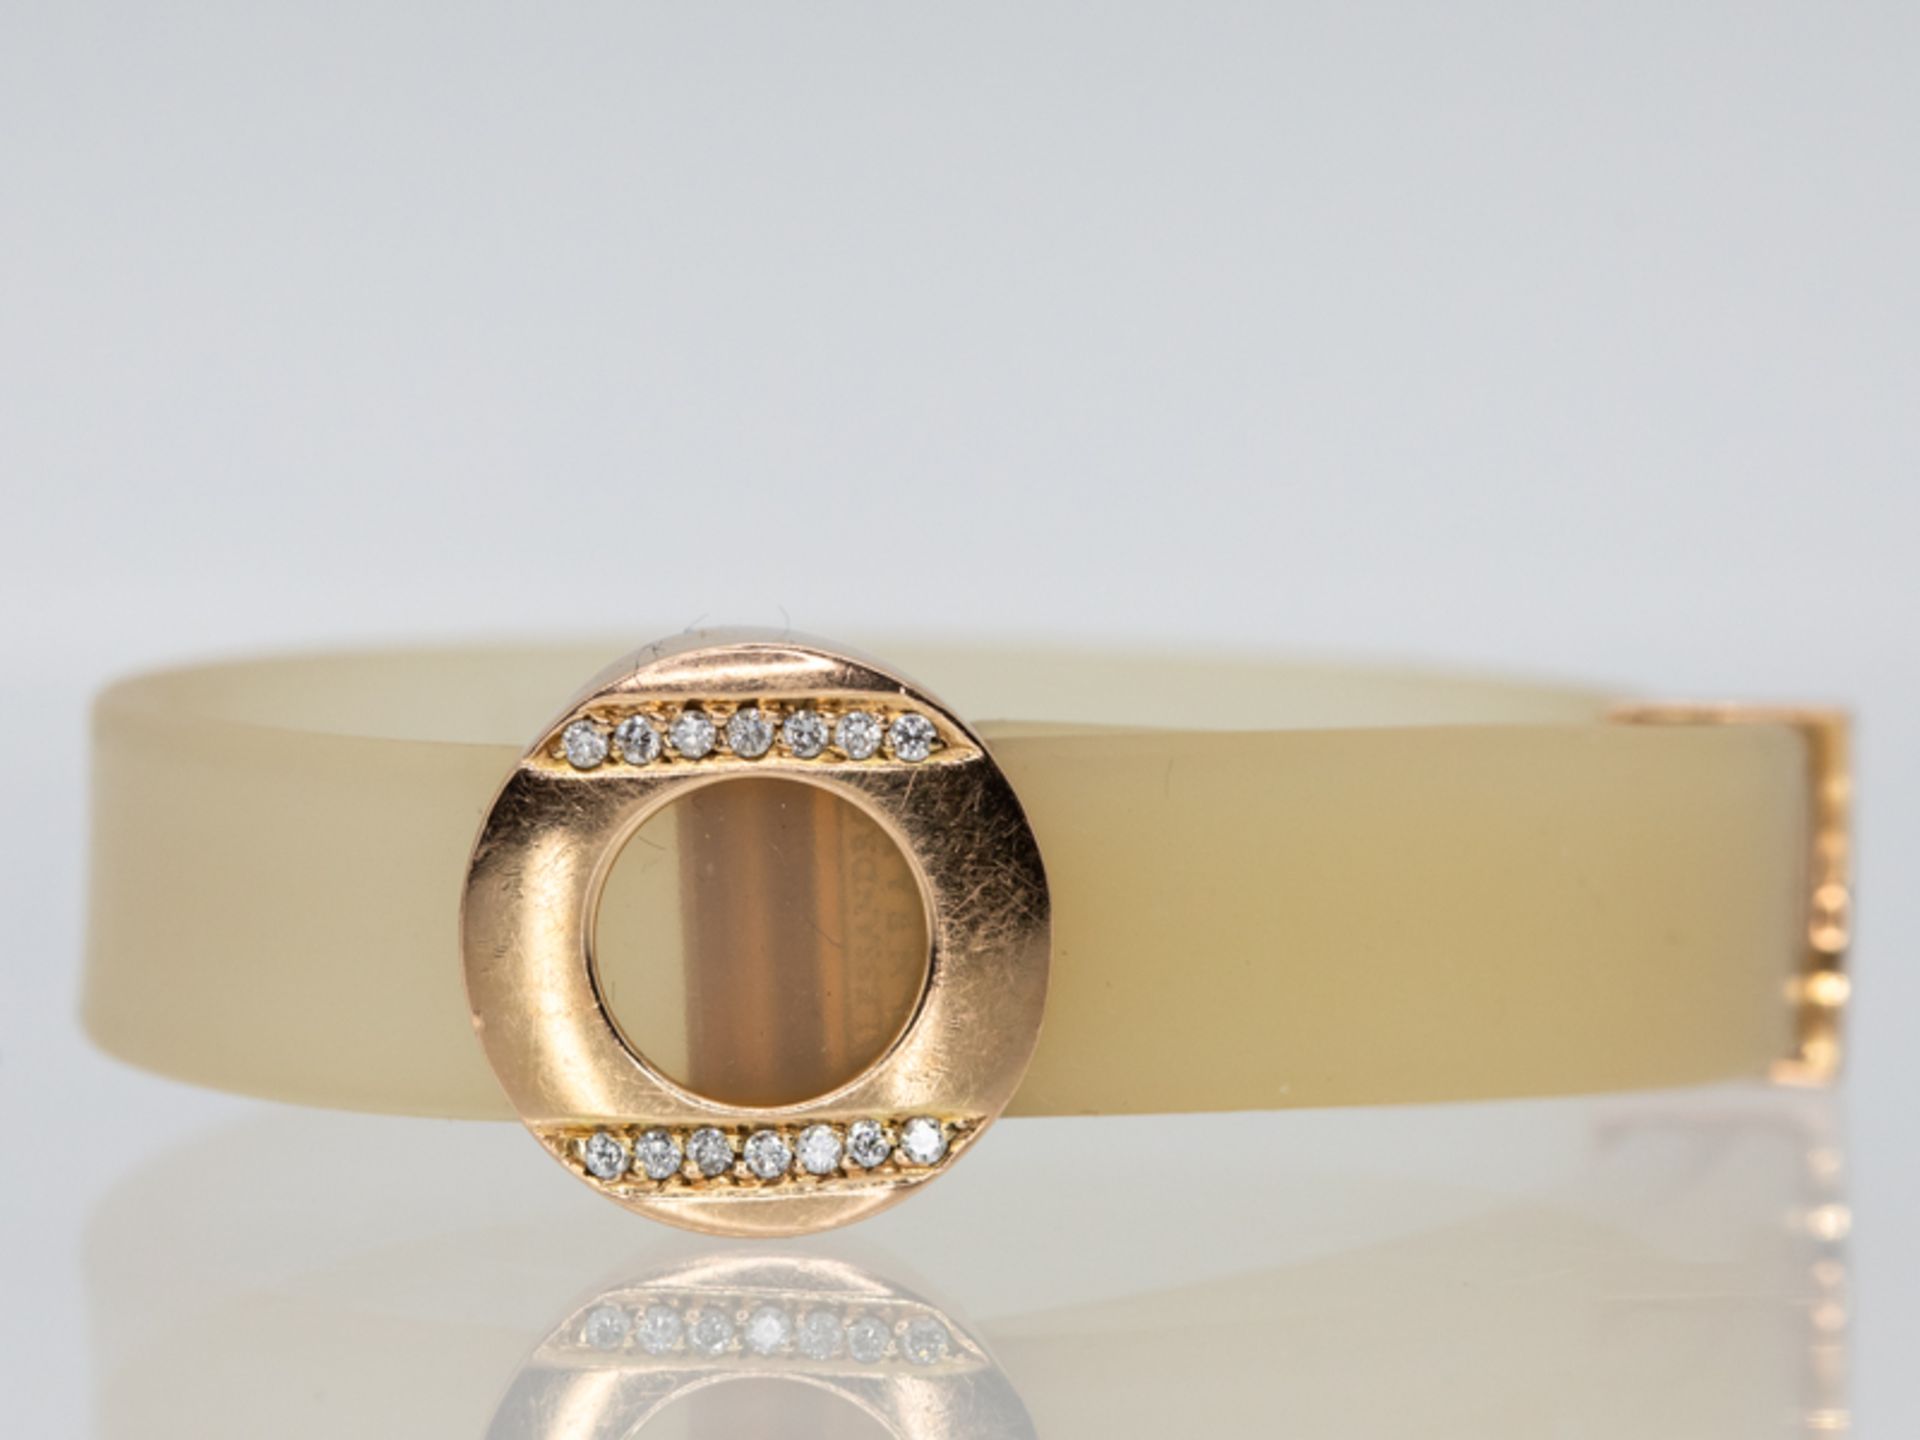 Armband aus Kautschuk mit goldener Schließe und 14 kleinen Brillanten, zus. ca. 0,14 ct, bez. Alessa - Image 2 of 7